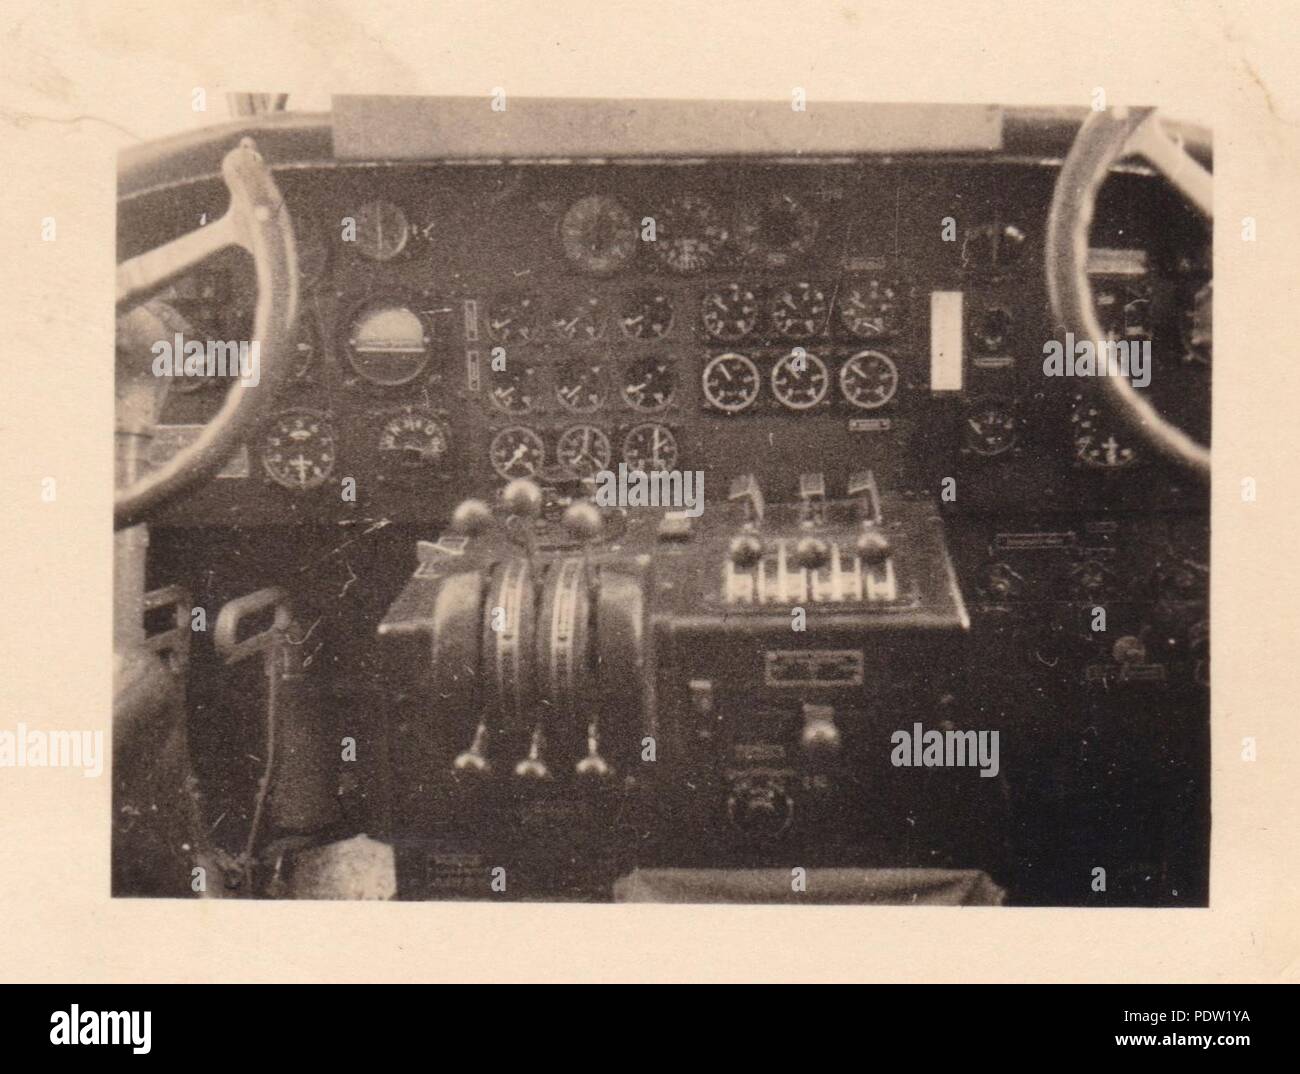 Bild aus dem Fotoalbum von Oberfeldwebel Karl gendner von 1. Staffel, Kampfgeschwader 40: Cockpit Steuerelemente eines Junkers Ju 52/3 m Transportflugzeug der 3./KGzbV 9 im September 1939 während der Polen Kampagne. Karl Gendner war ein Pilot mit diesem Gerät zu der Zeit. Stockfoto